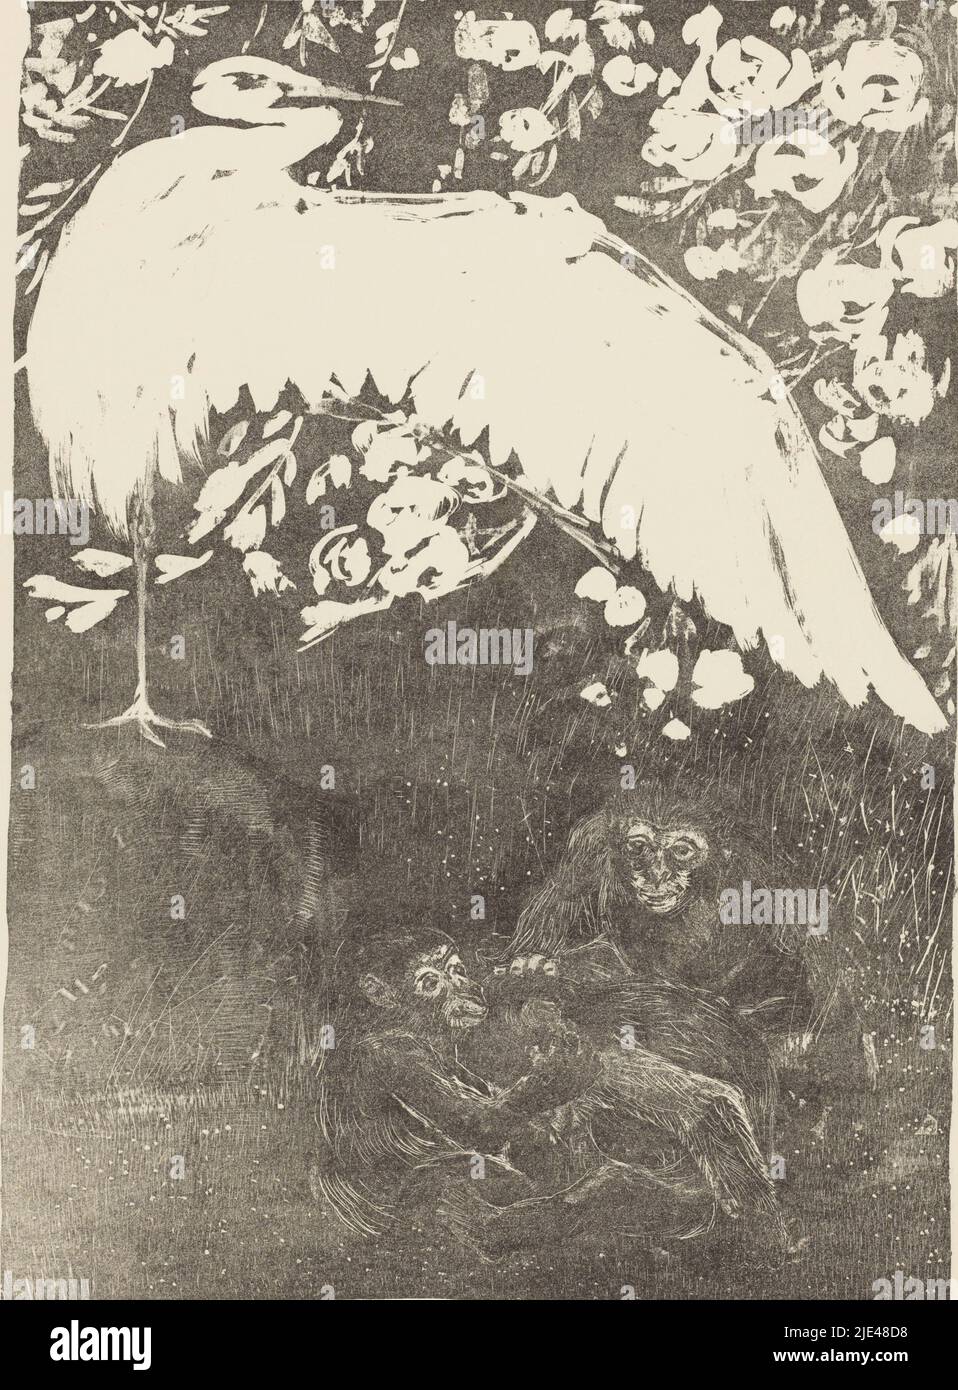 Reiher mit drei Affen, Theo van Hoytema, 1905, Reiher mit ausgestrecktem Flügel, unter dem drei Affen spielen., Druckerei: Theo van Hoytema, London, 1905, Papier, H 424 mm × B 295 mm Stockfoto